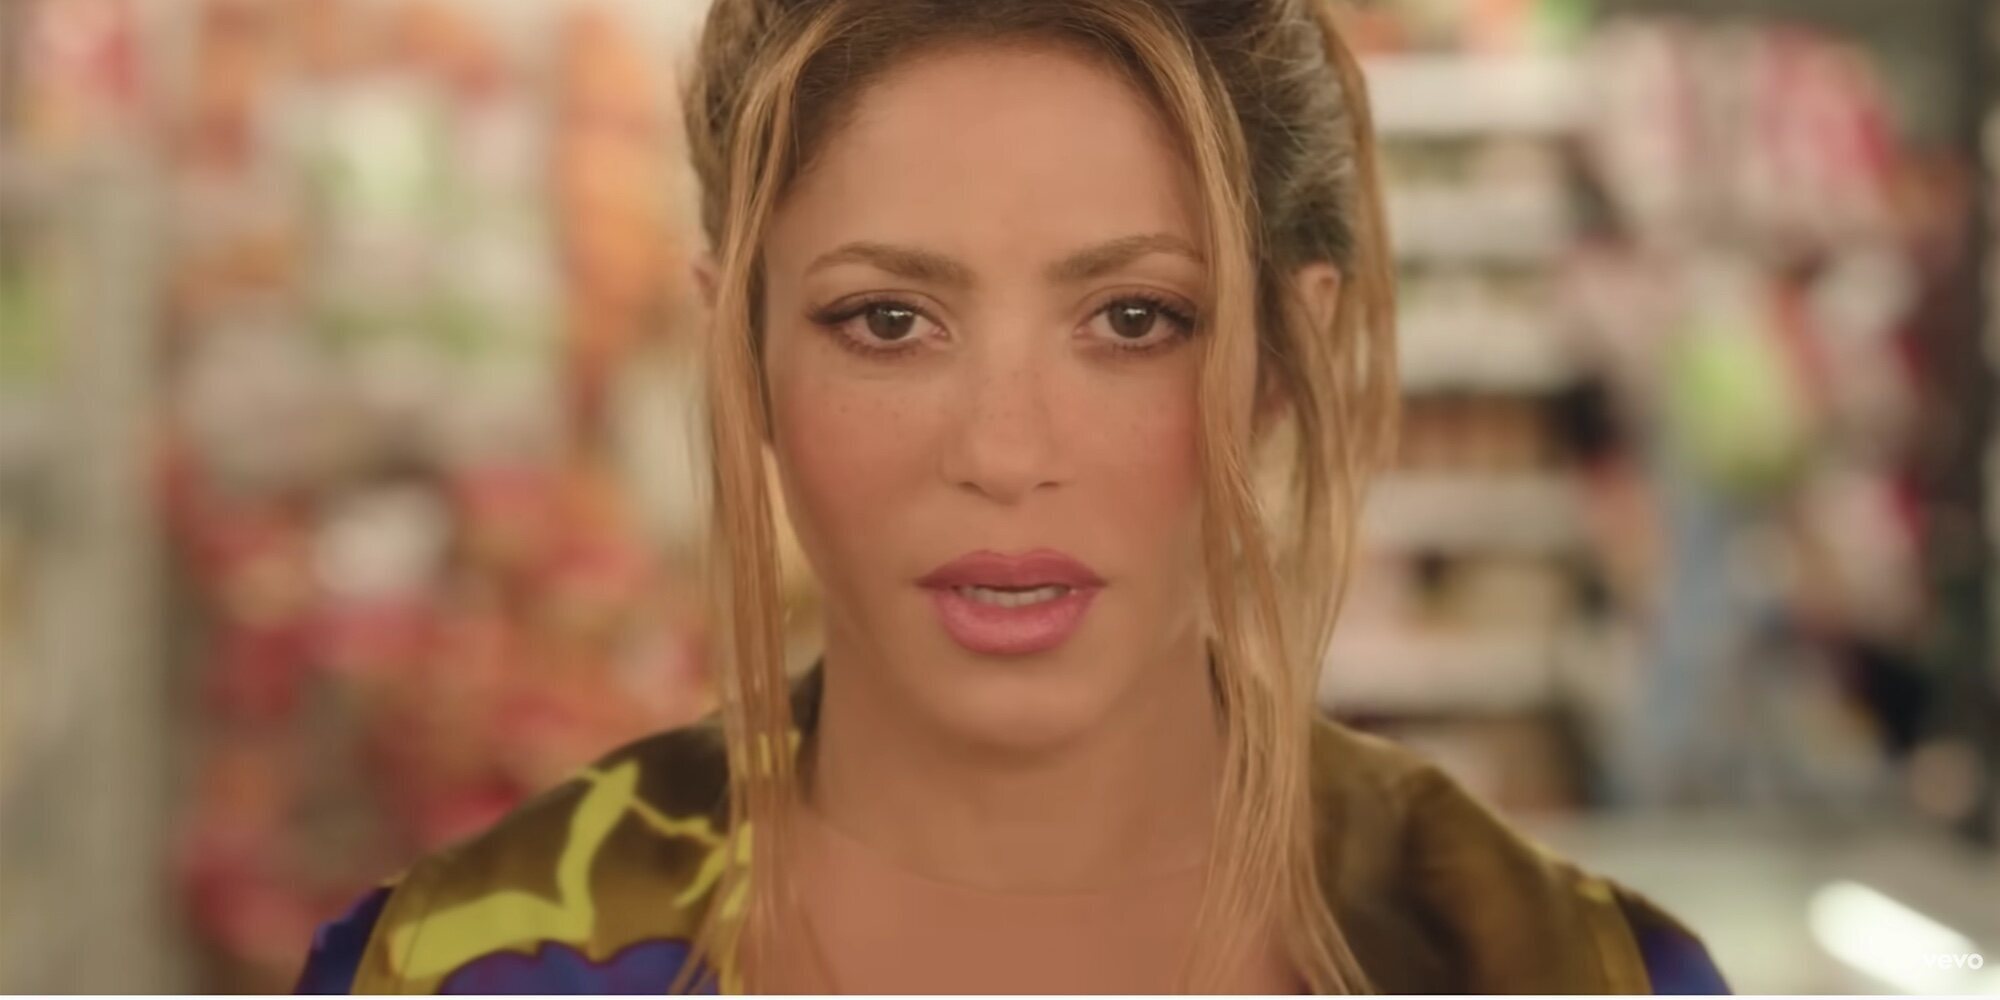 El directo videoclip de Shakira: el hombre que 'la mata' en 'Monotonía' va vestido como Piqué en 'Me enamoré'